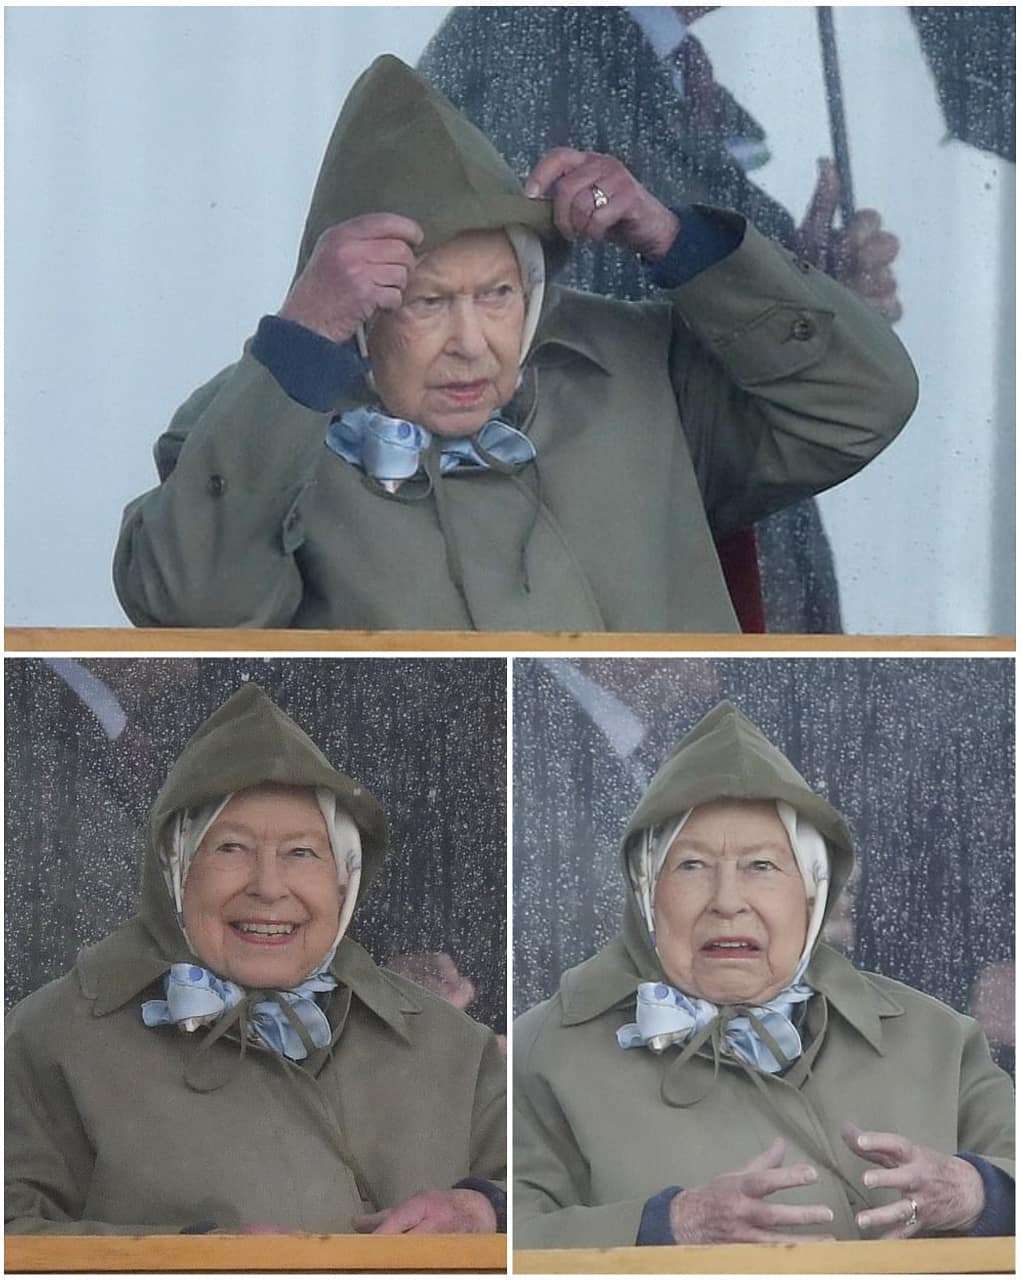 Королева Єлизавета ІІ вболівала на скачках і її вирази обличчя заслуговують 'Оскара' - фото 432543